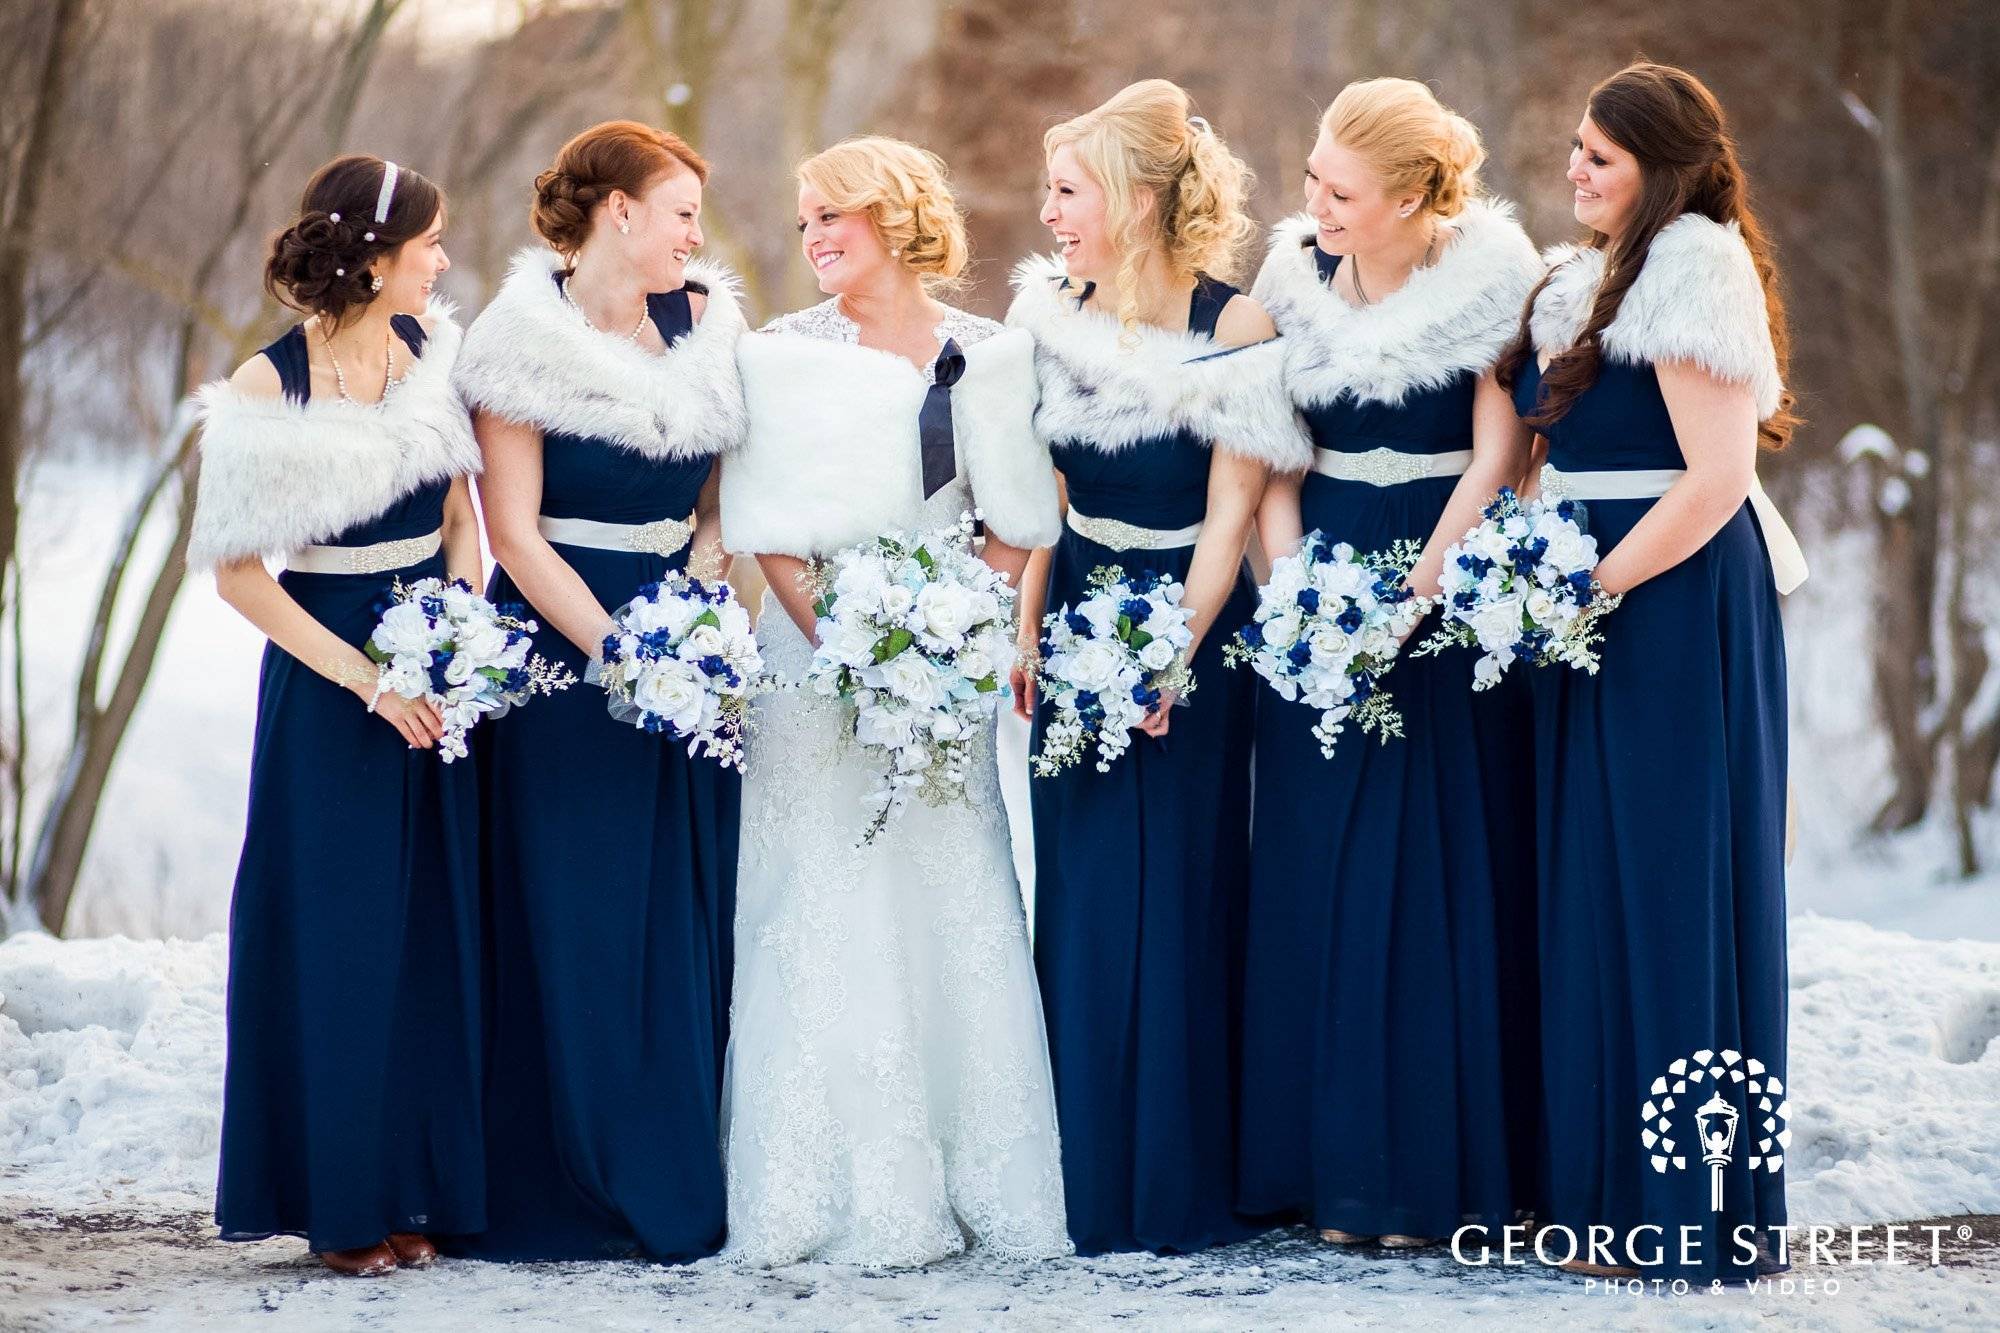 Как невесте выбрать зимнее свадебное платье?